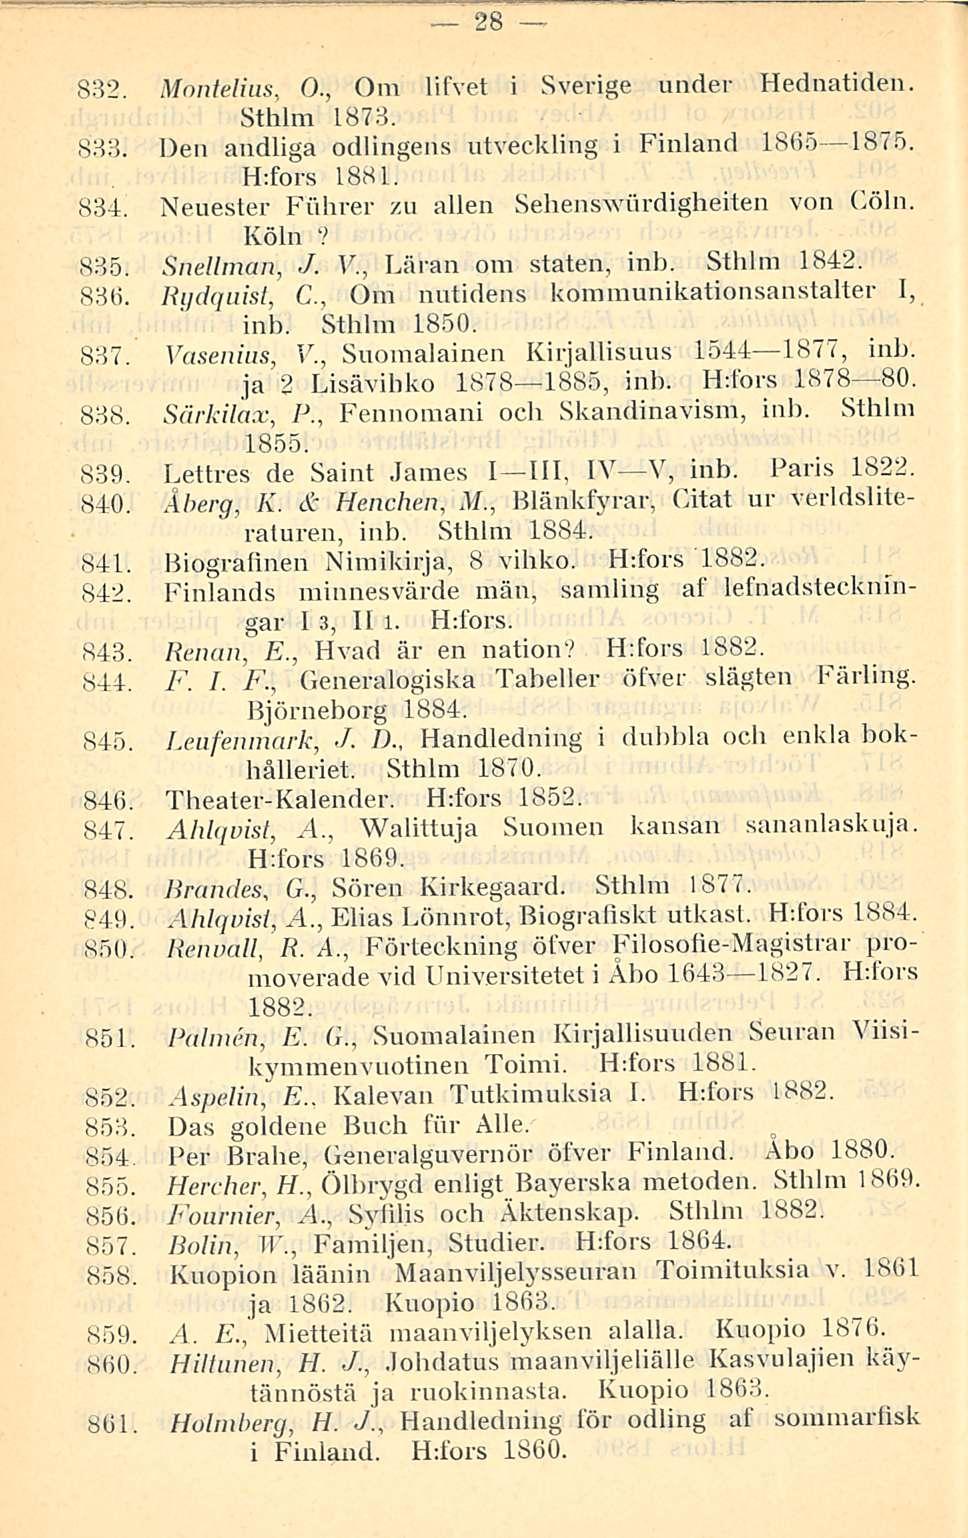 28 832. Montelius, 0., Om lifvet i Sverige under Hednatiden. Sthlm 1873. 833. Den andliga odlingens utveckling i Finland 1865 1875. H:fors 1881. 834.